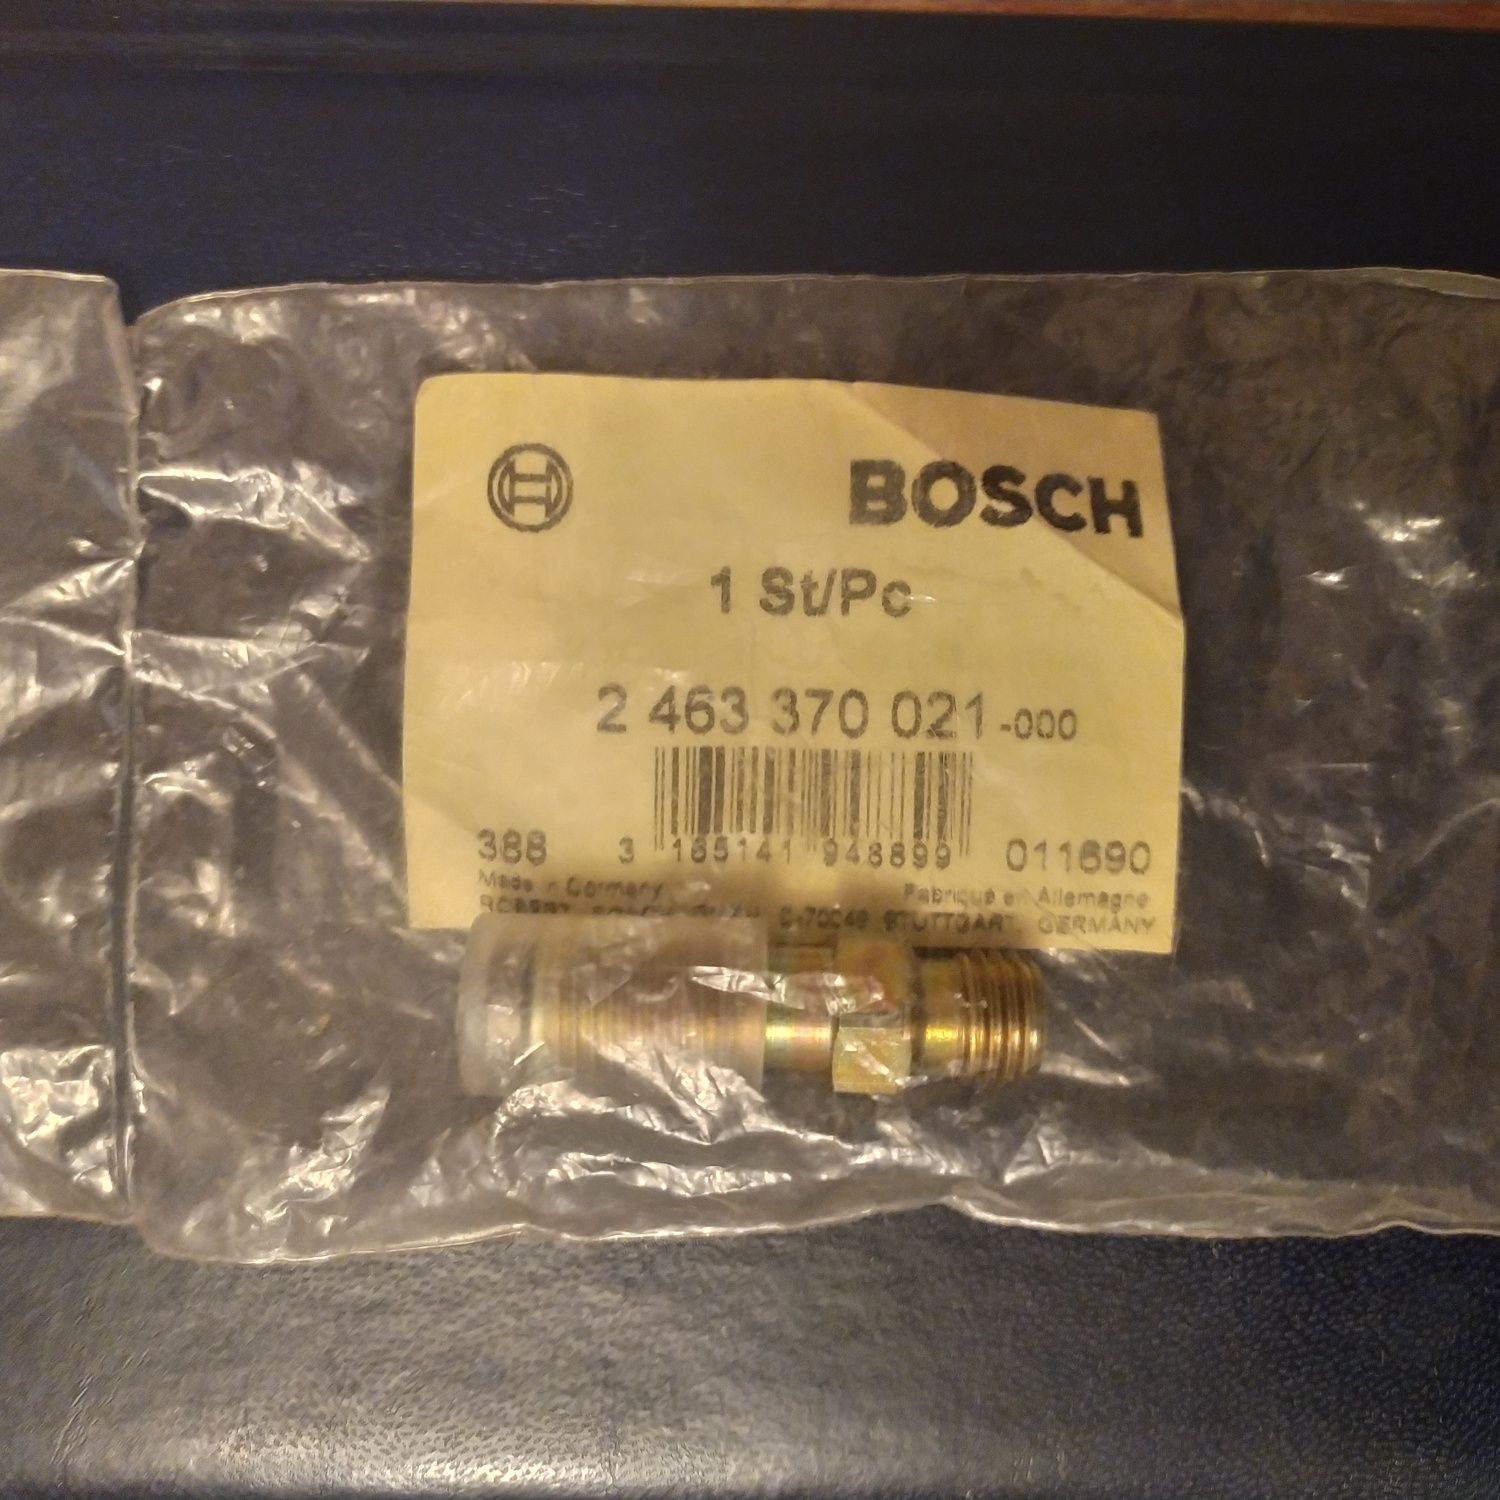 Штуцер 2 463 370 021 Bosch